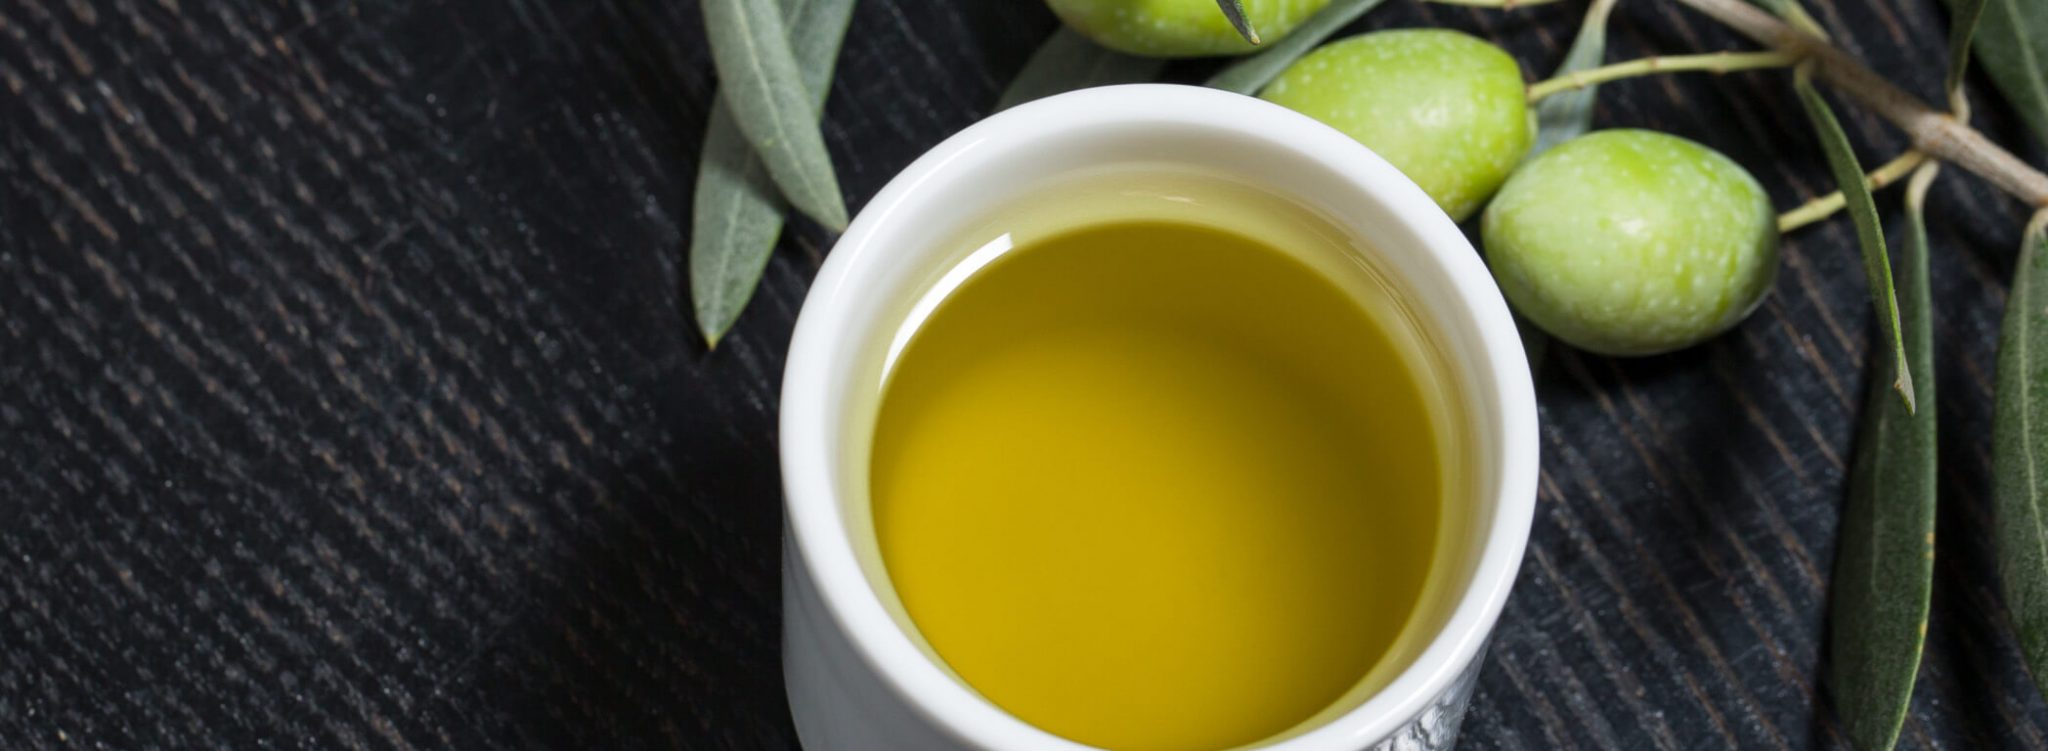 Aceite de oliva virgen extra de Torrequebrada Gourmet, el auténtico sabor de Extremadura, de la dehesa extremeña a tu mesa